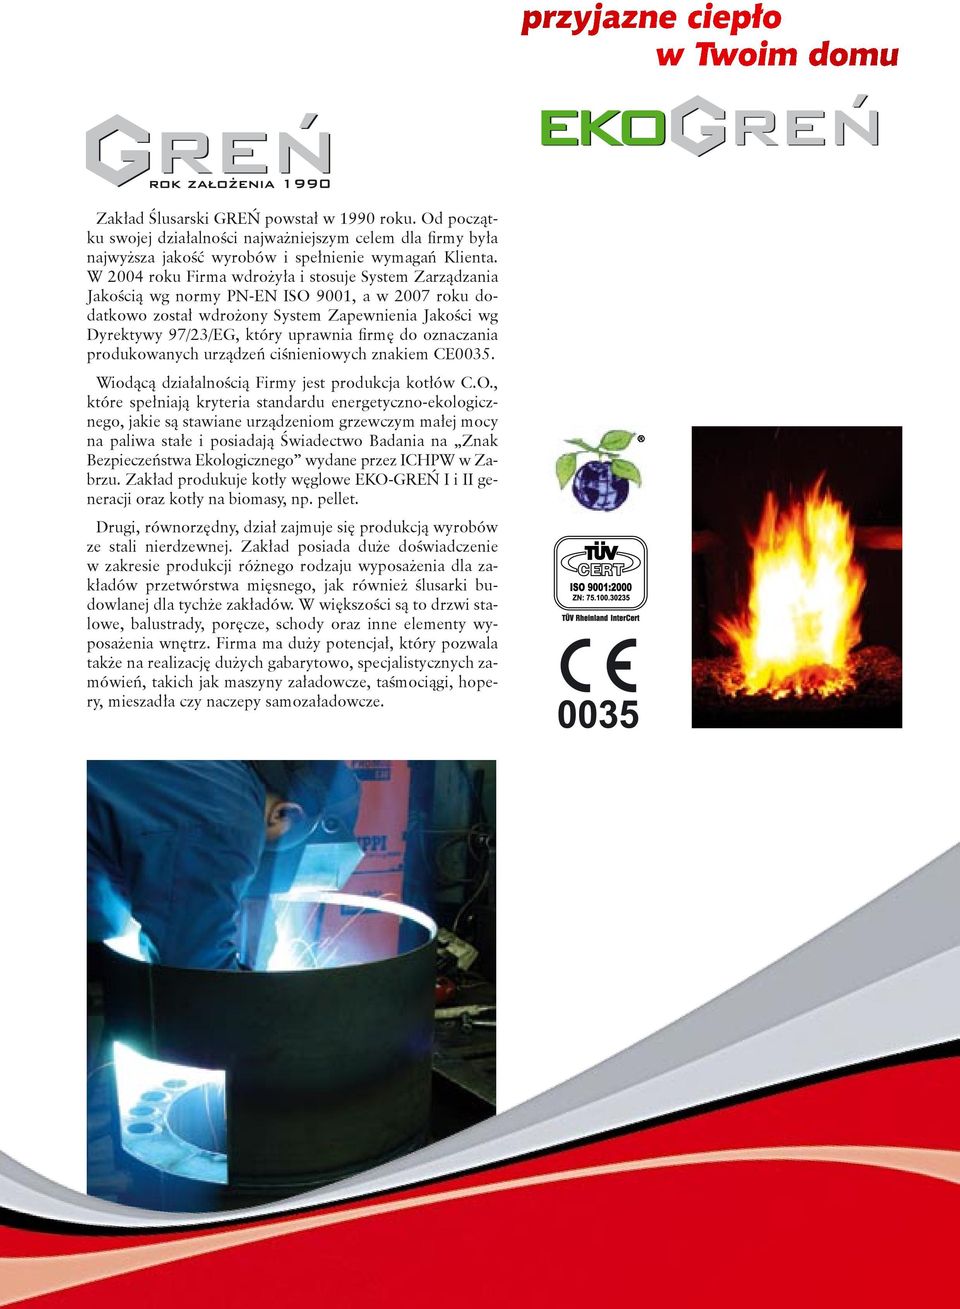 firmę do oznaczania produkowanych urządzeń ciśnieniowych znakiem CE0035. Wiodącą działalnością Firmy jest produkcja kotłów C.O.